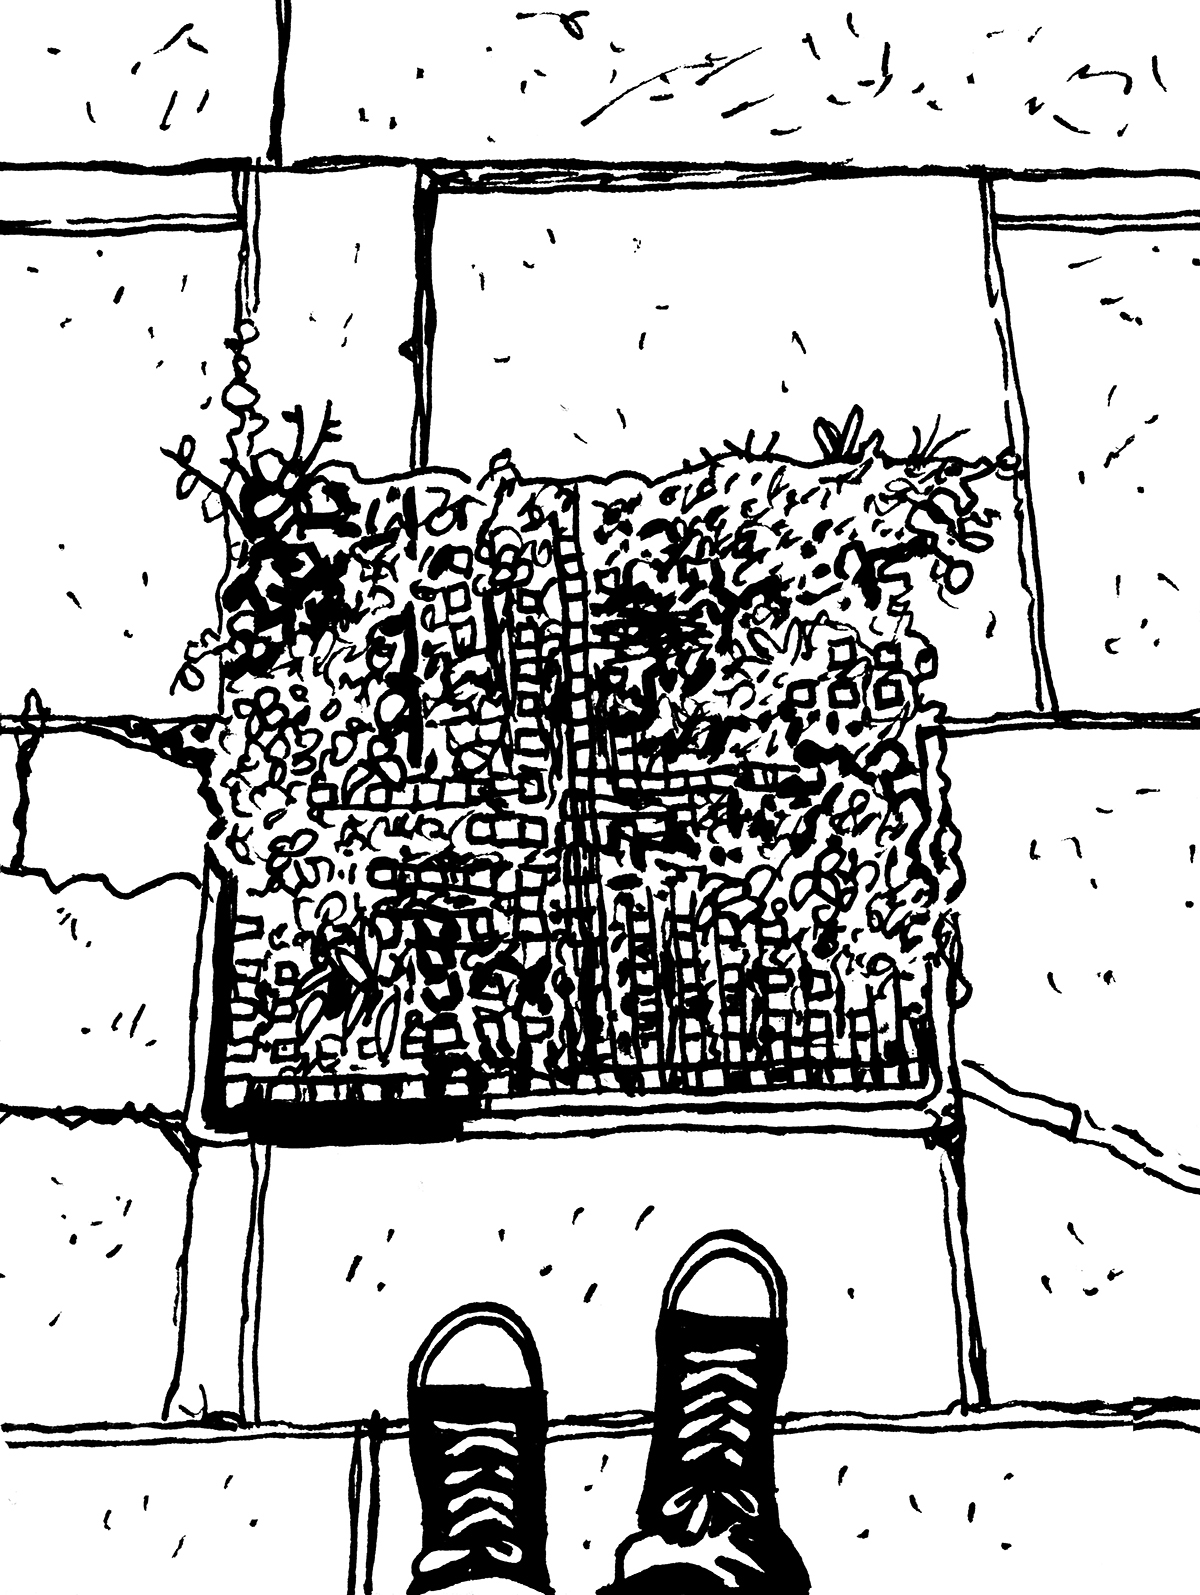 Widok z góry na zarośniętą chwastami kratkę znajdującą się pomiędzy płytami chodnikowymi. Pod kratą widoczne sznurowane buty osoby oglądającej chwasty.